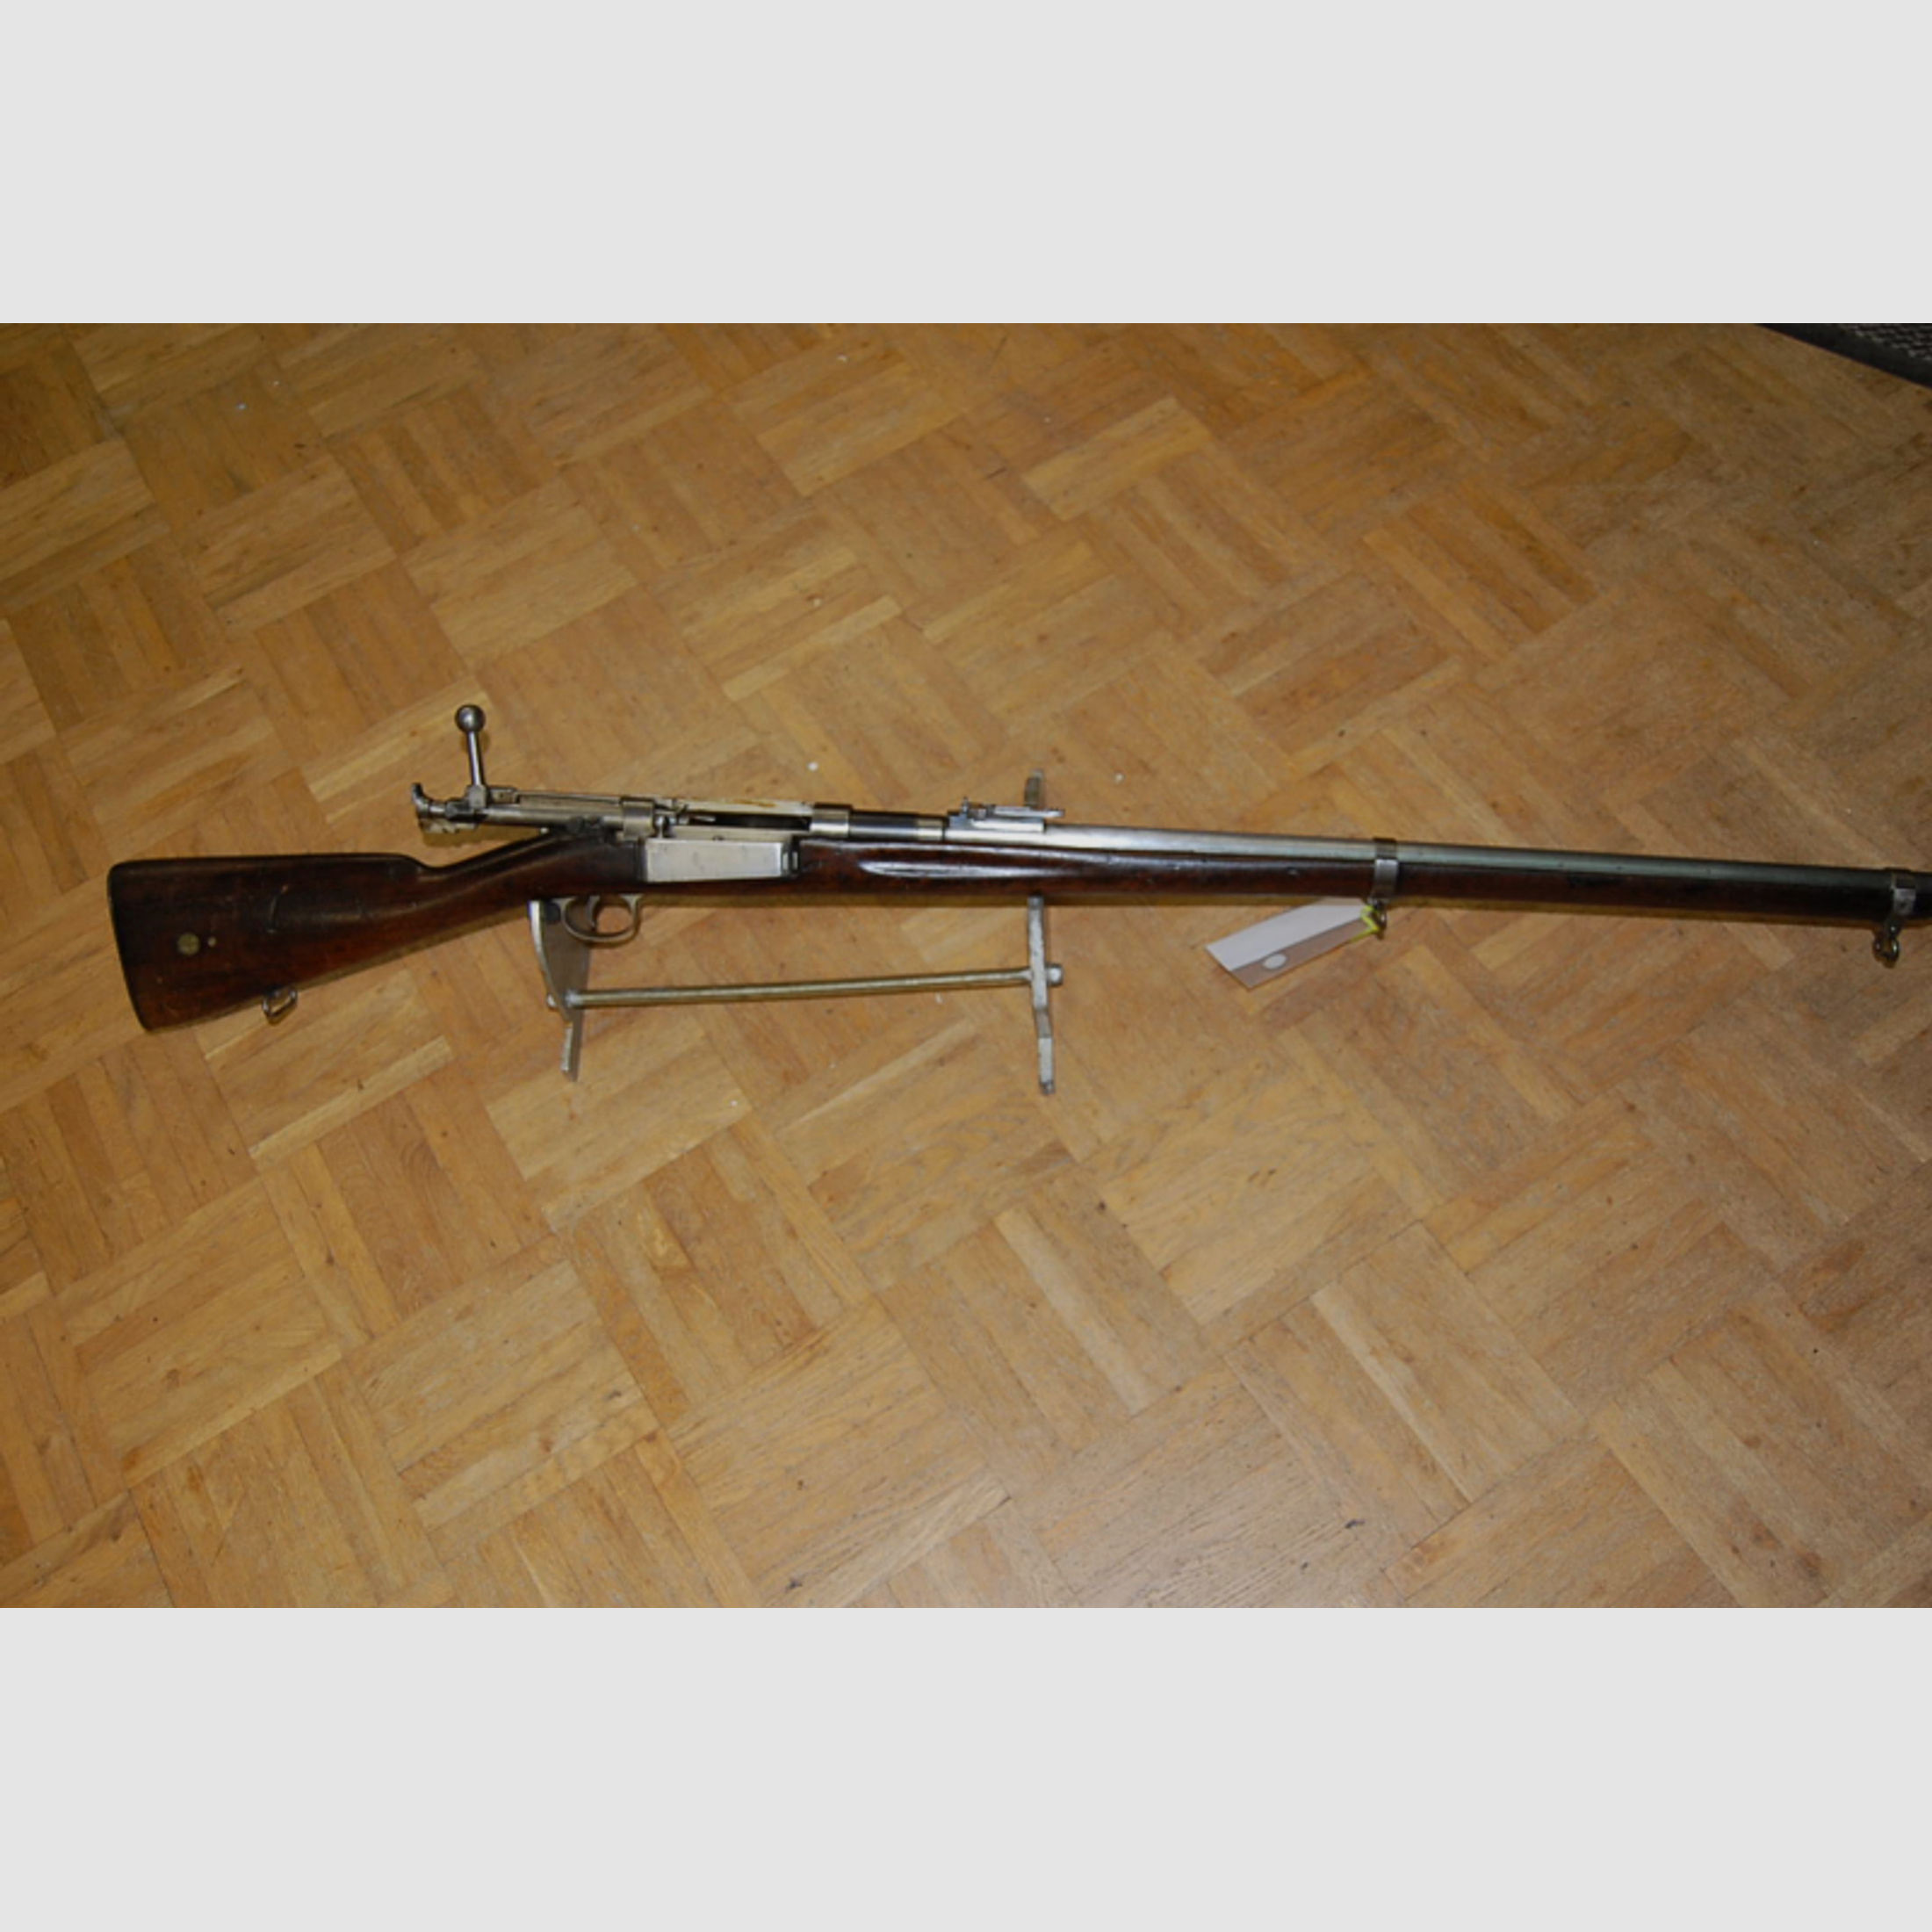 Ordonnanzwaffe Gewehr Krag Jörgensen M 1894 Kal 8x58mm R Nrgl aus Sammlung